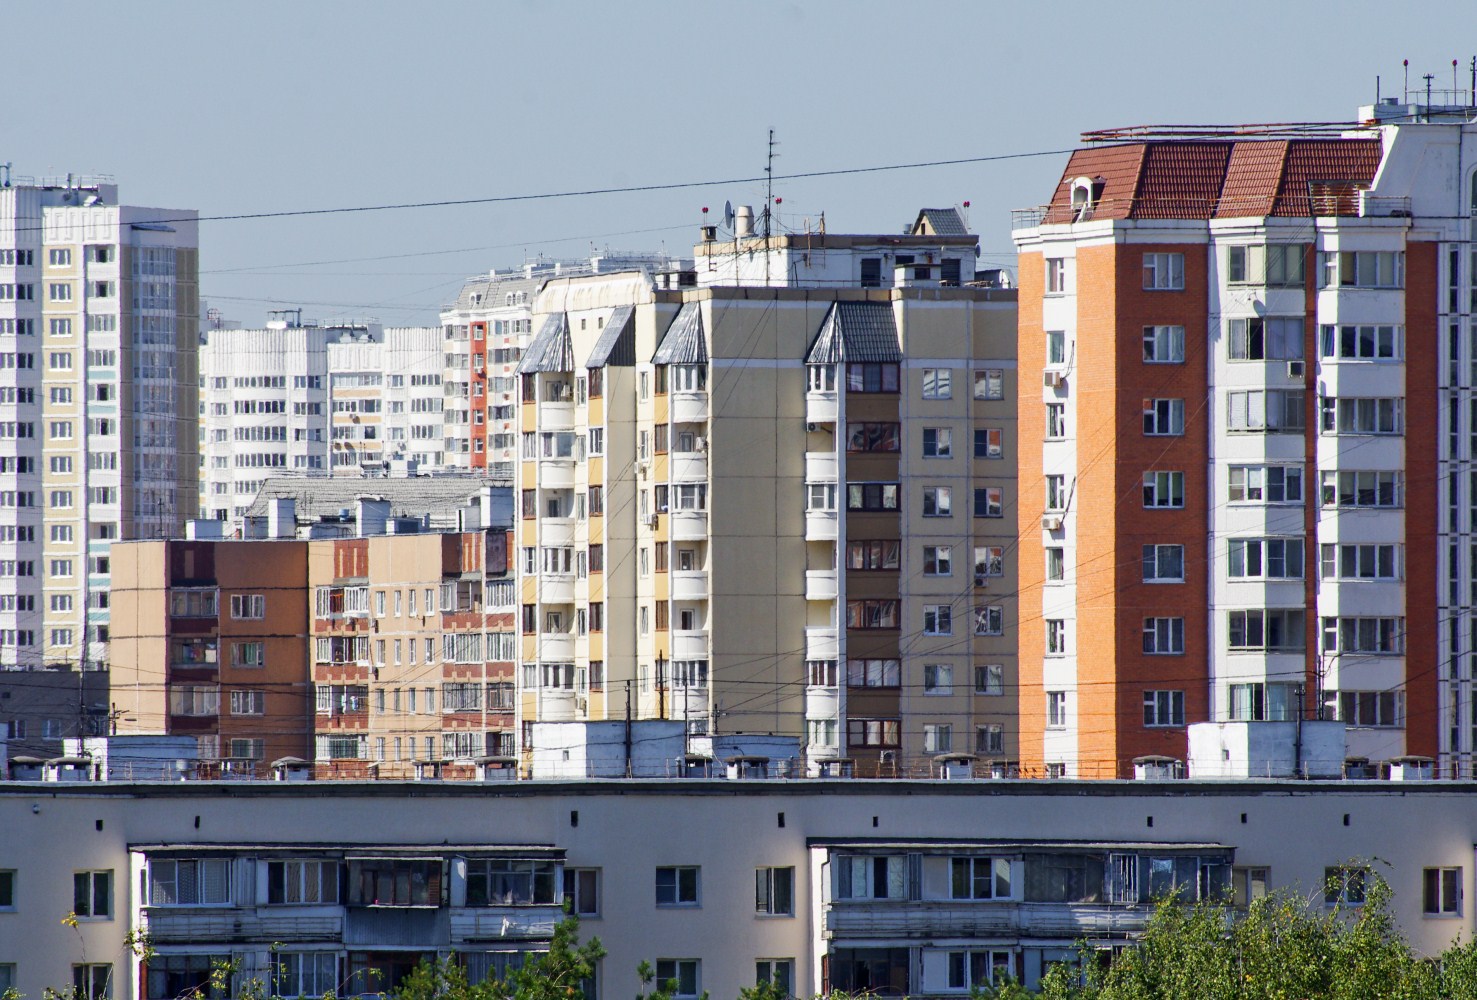 Каждый пятый арендатор жилья в РФ недоволен условиями проживания - опрос